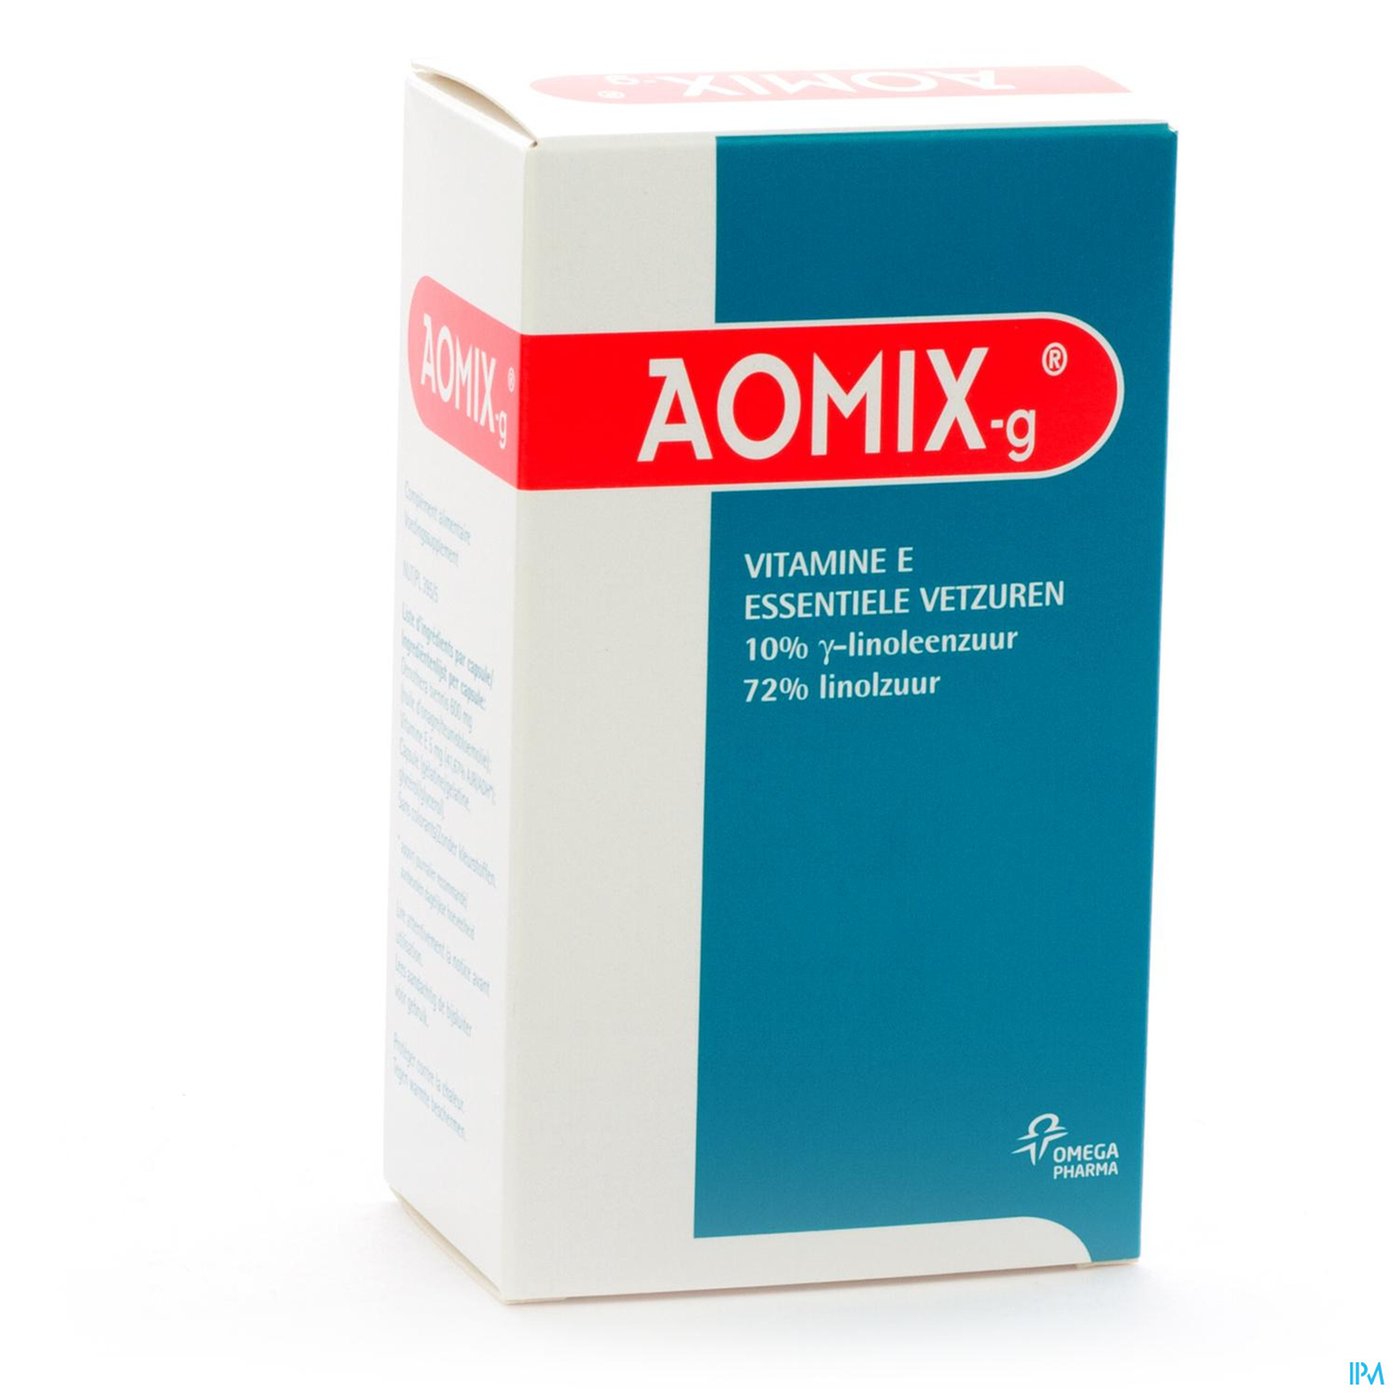 Aomix-g Caps 80 X 605mg packshot